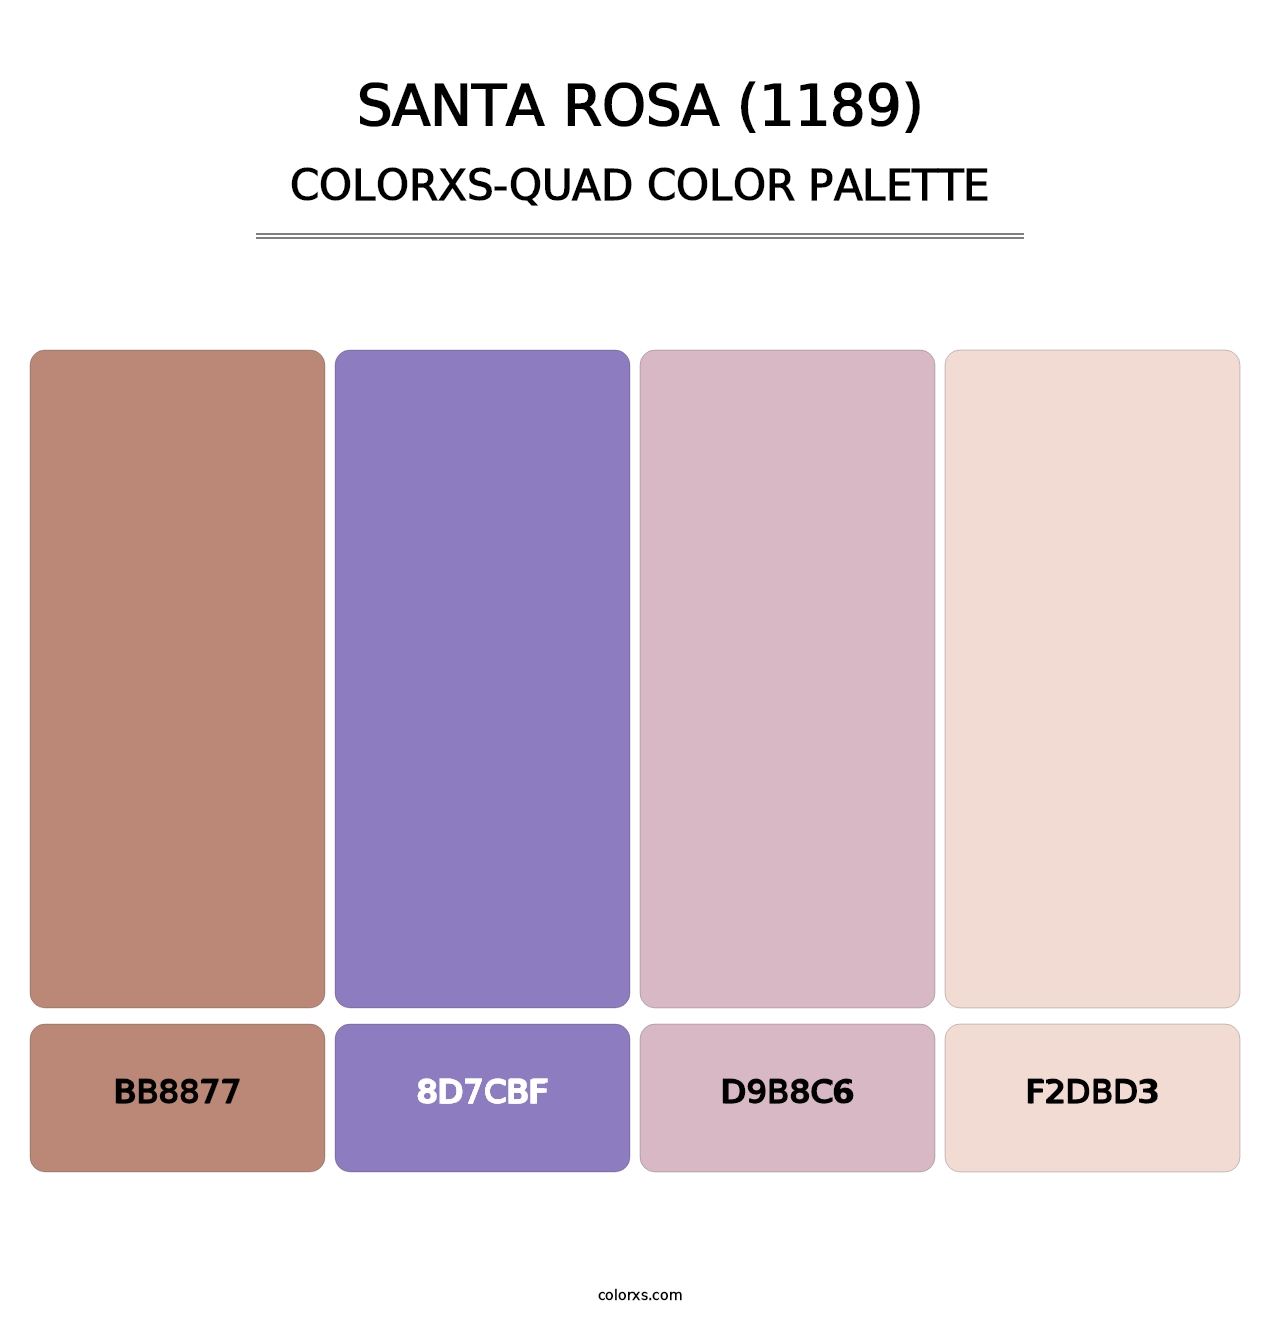 Santa Rosa (1189) - Colorxs Quad Palette